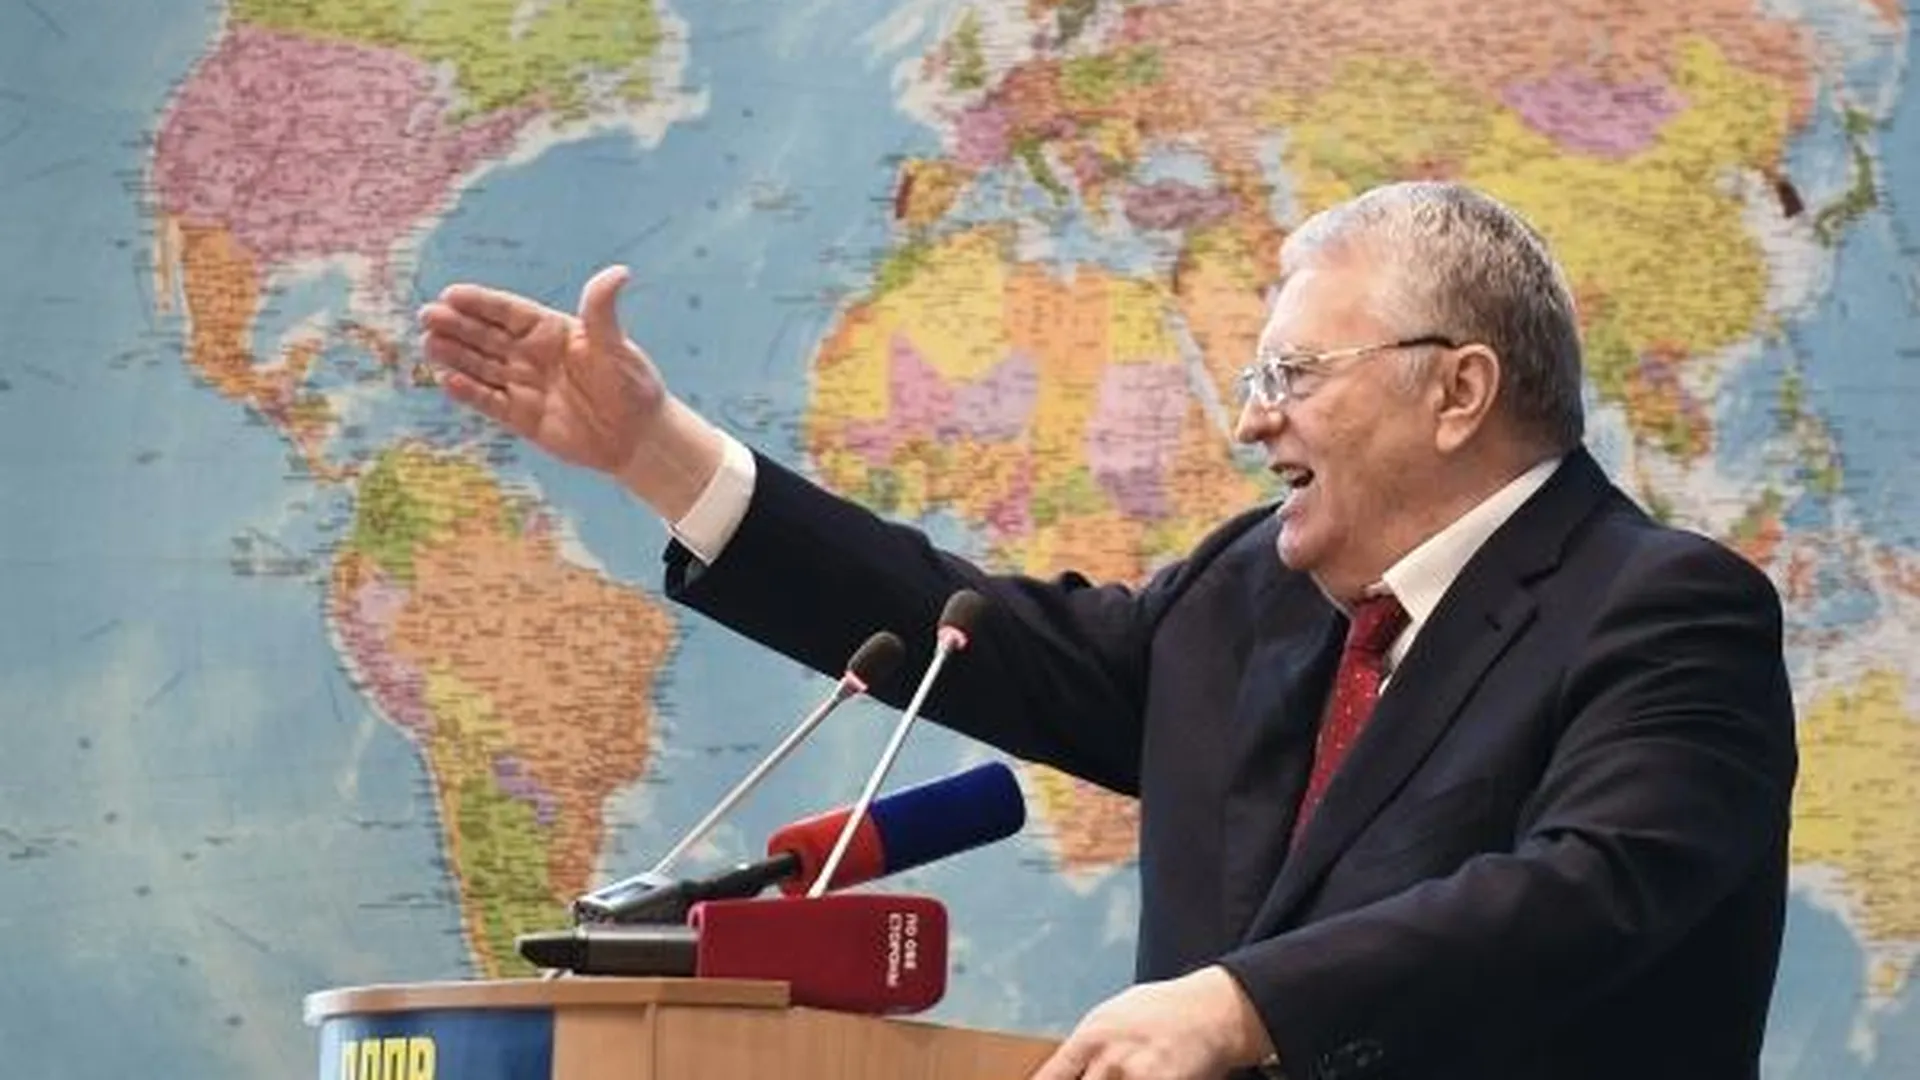 ЛДПР выдвинула кандидатуру Жириновского на выборы президента РФ 2018 г